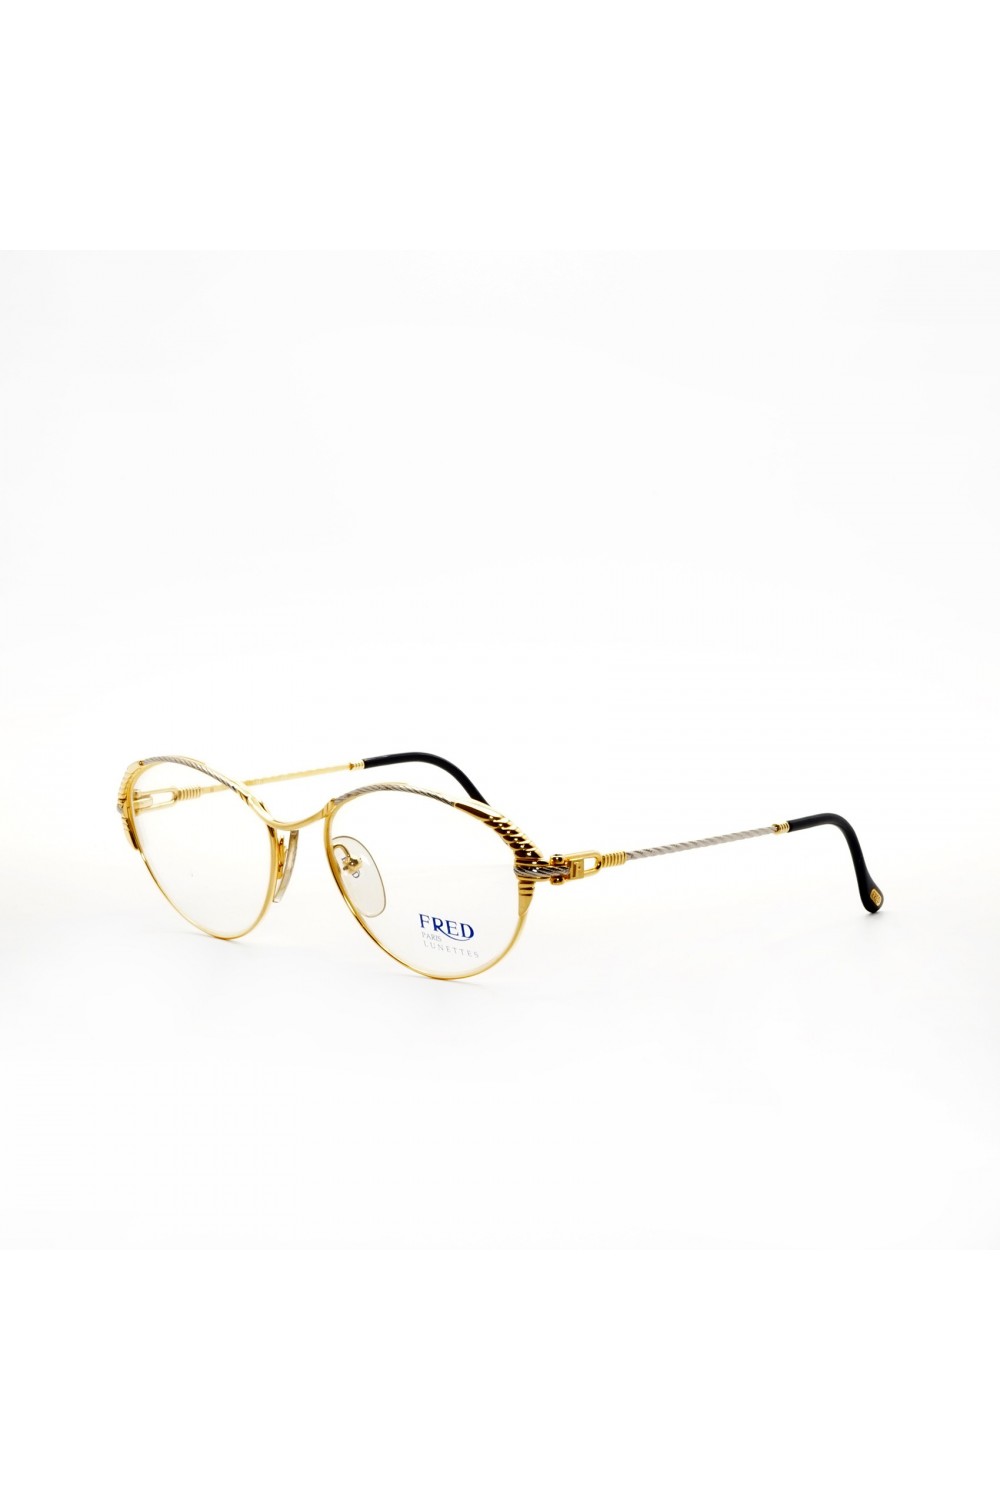 Fred - Occhiali da vista vintage in metallo ovali per donna oro - GOELETTE G5